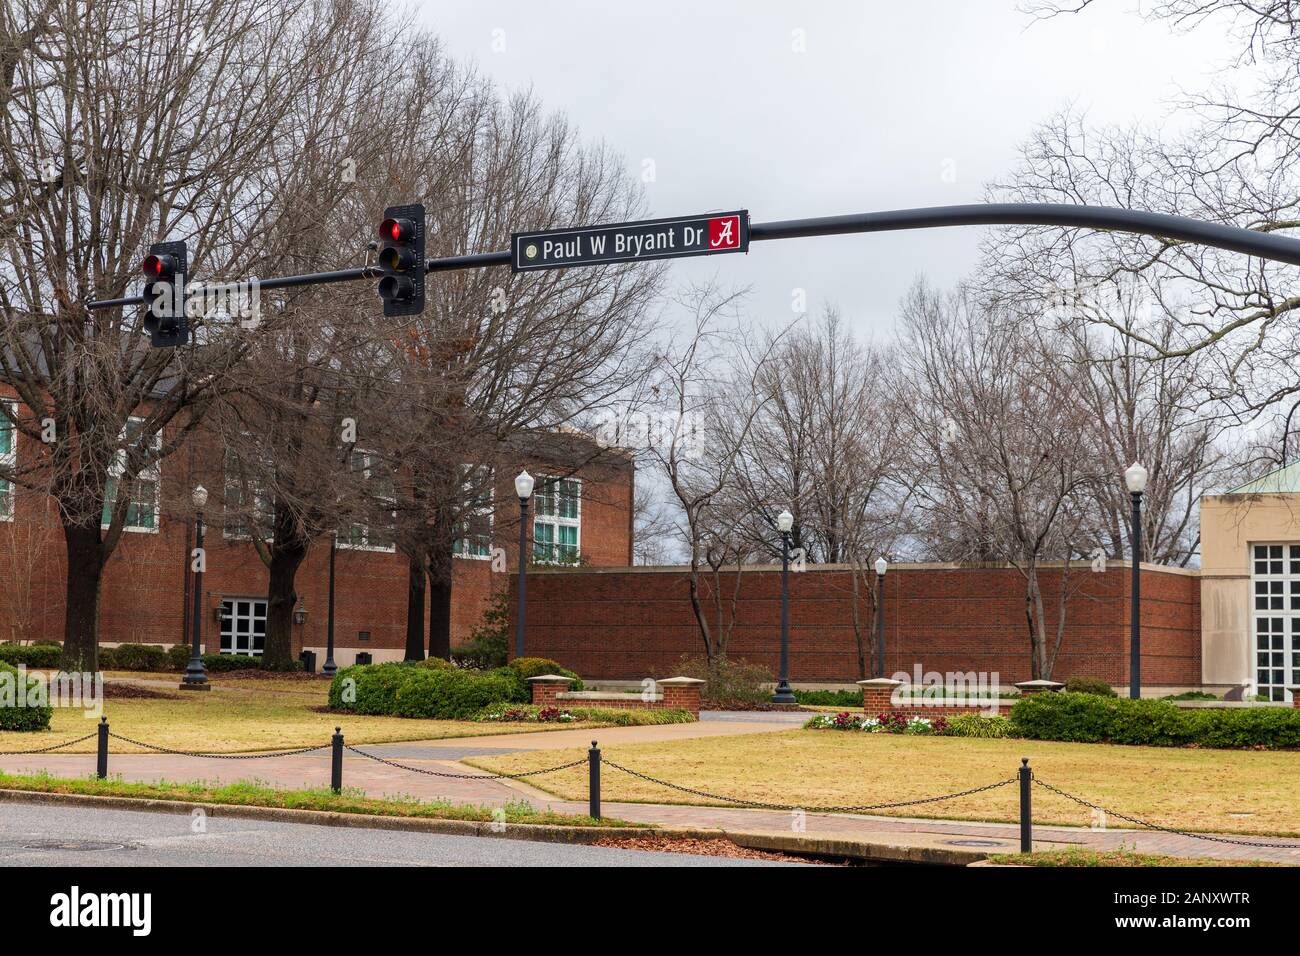 Tuscaloosa, AL / STATI UNITI D'America - 29 dicembre 2019: Paul W Bryant Dr segno sul campus della University of Alabama Foto Stock